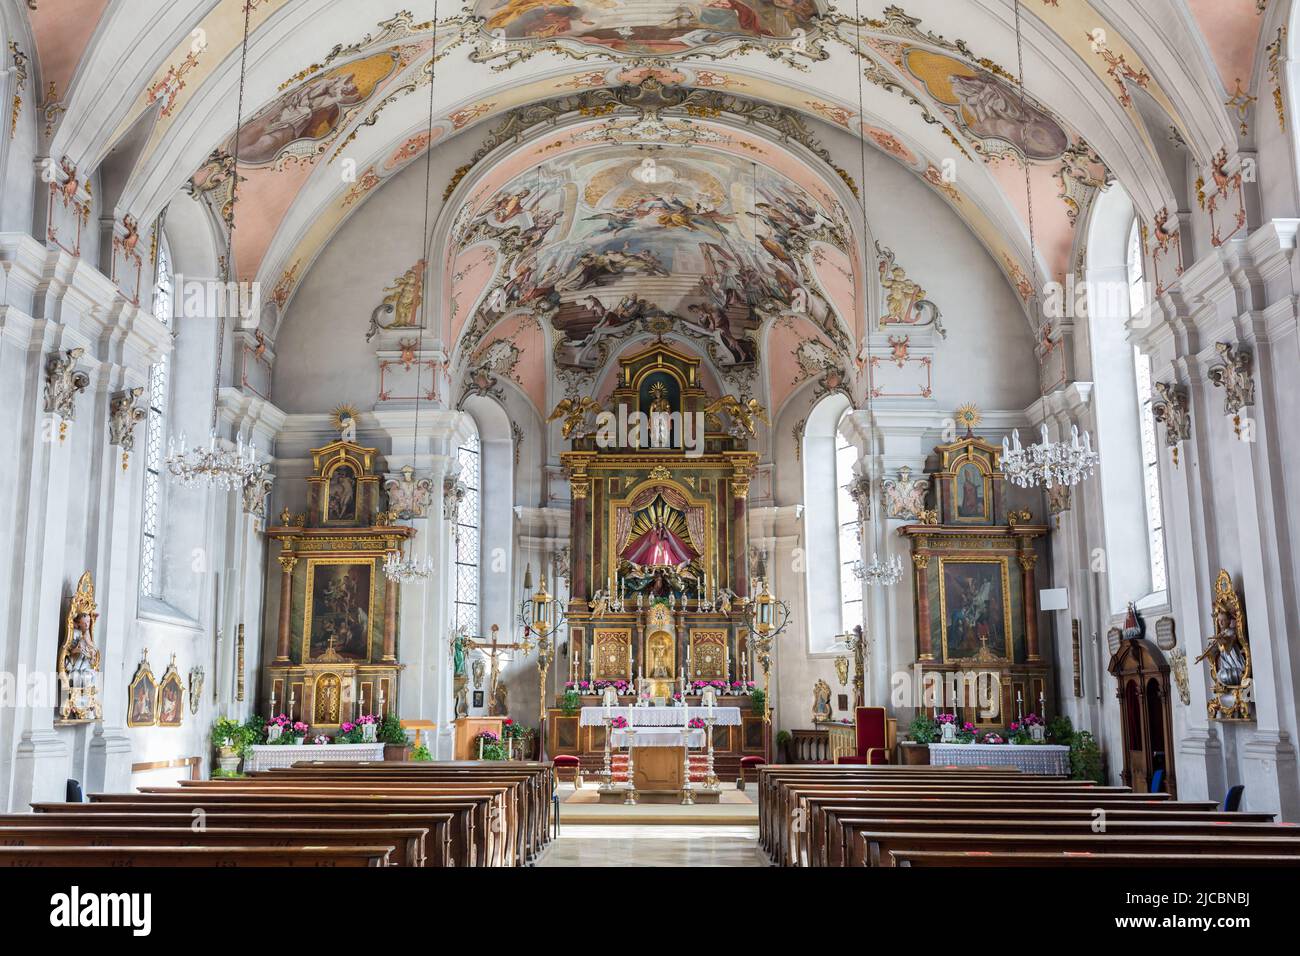 Bad Tölz, Germany - Feb 2, 2022: Interior of church Mariä Himmelfahrt. Stock Photo